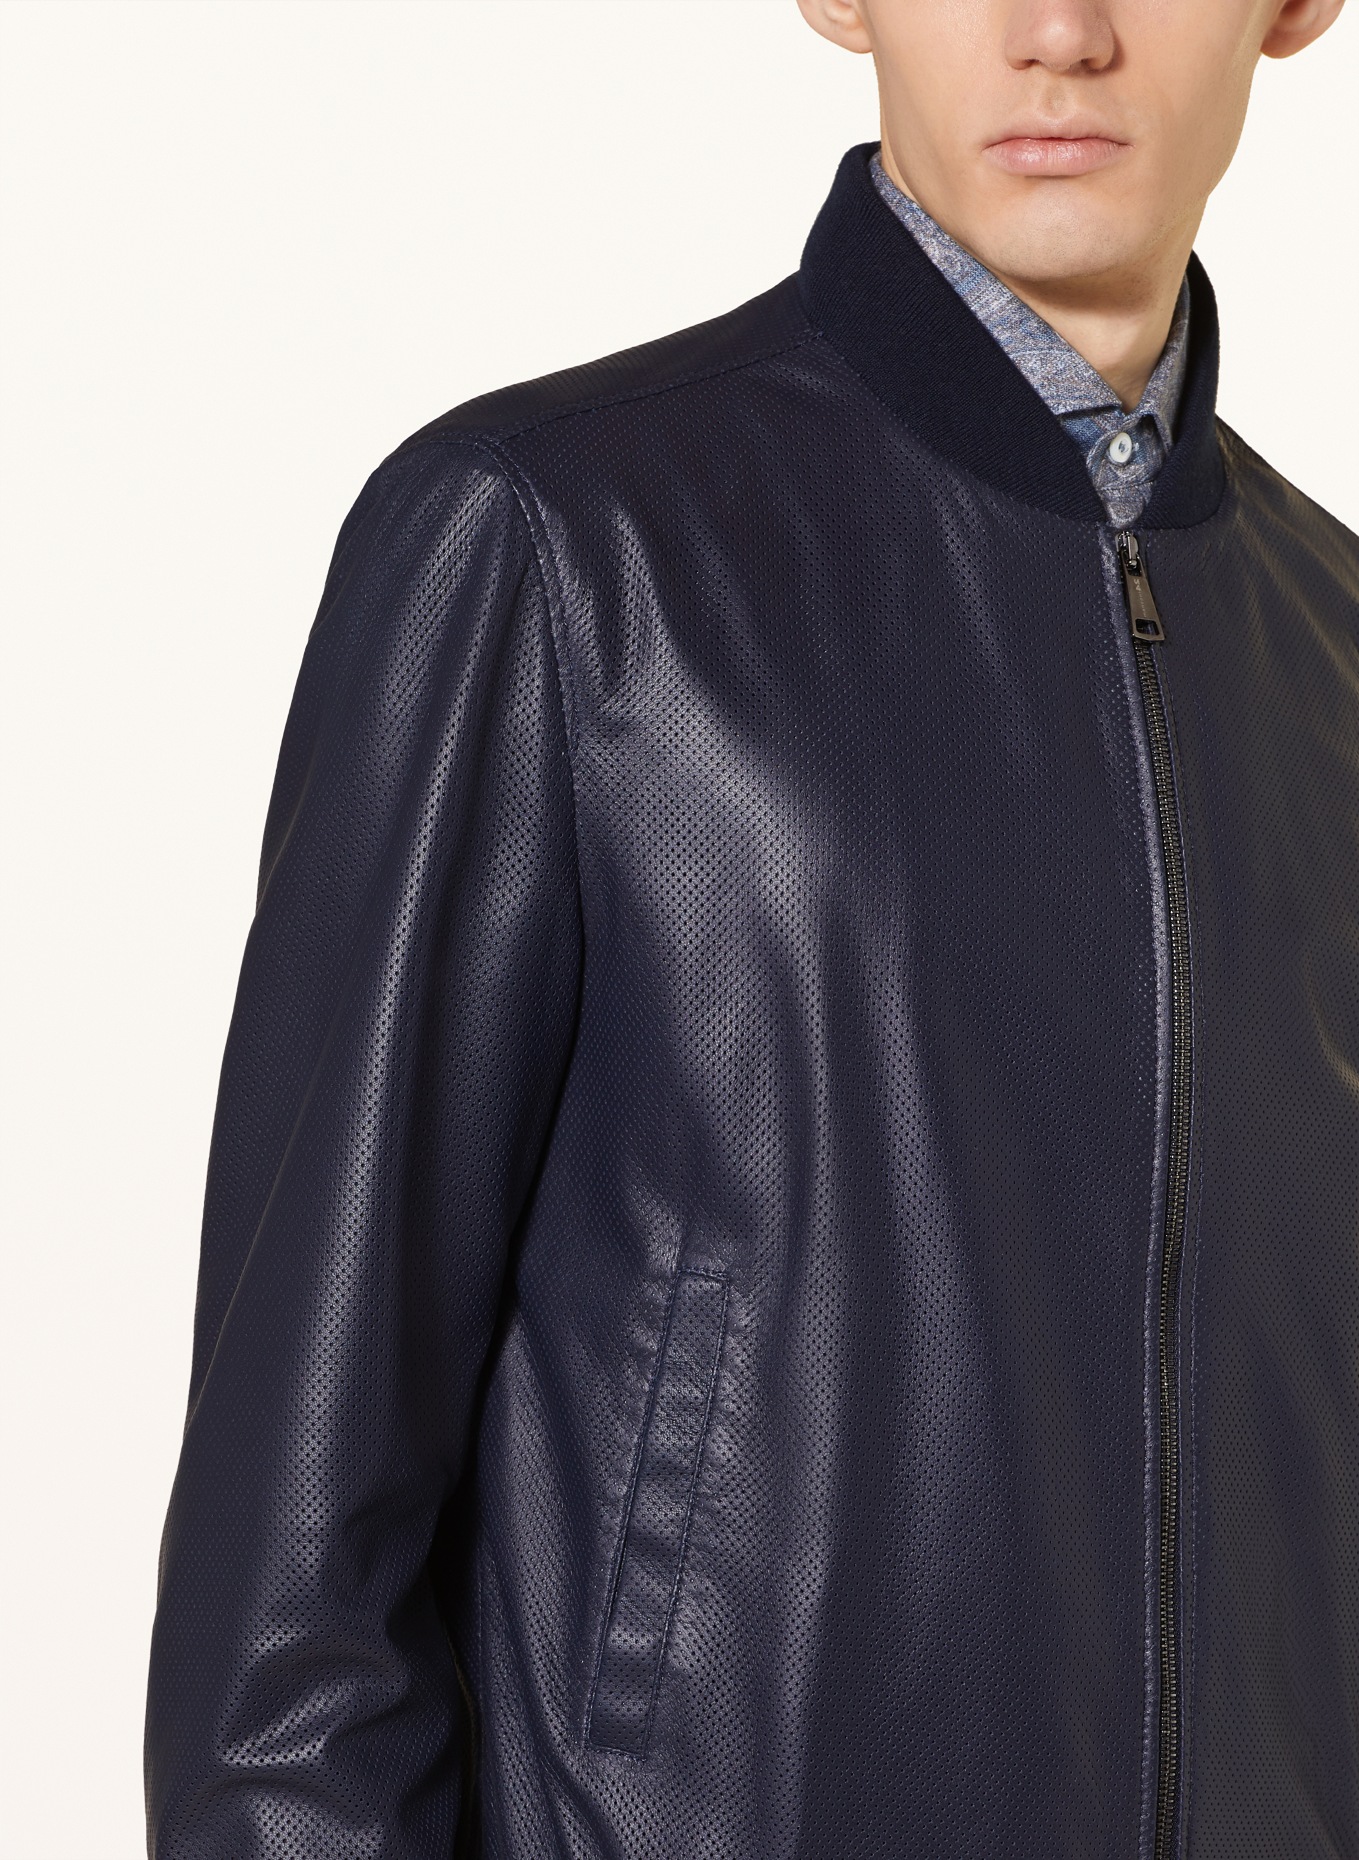 manzoni 24 Leather jacket, Color: DARK BLUE (Image 4)